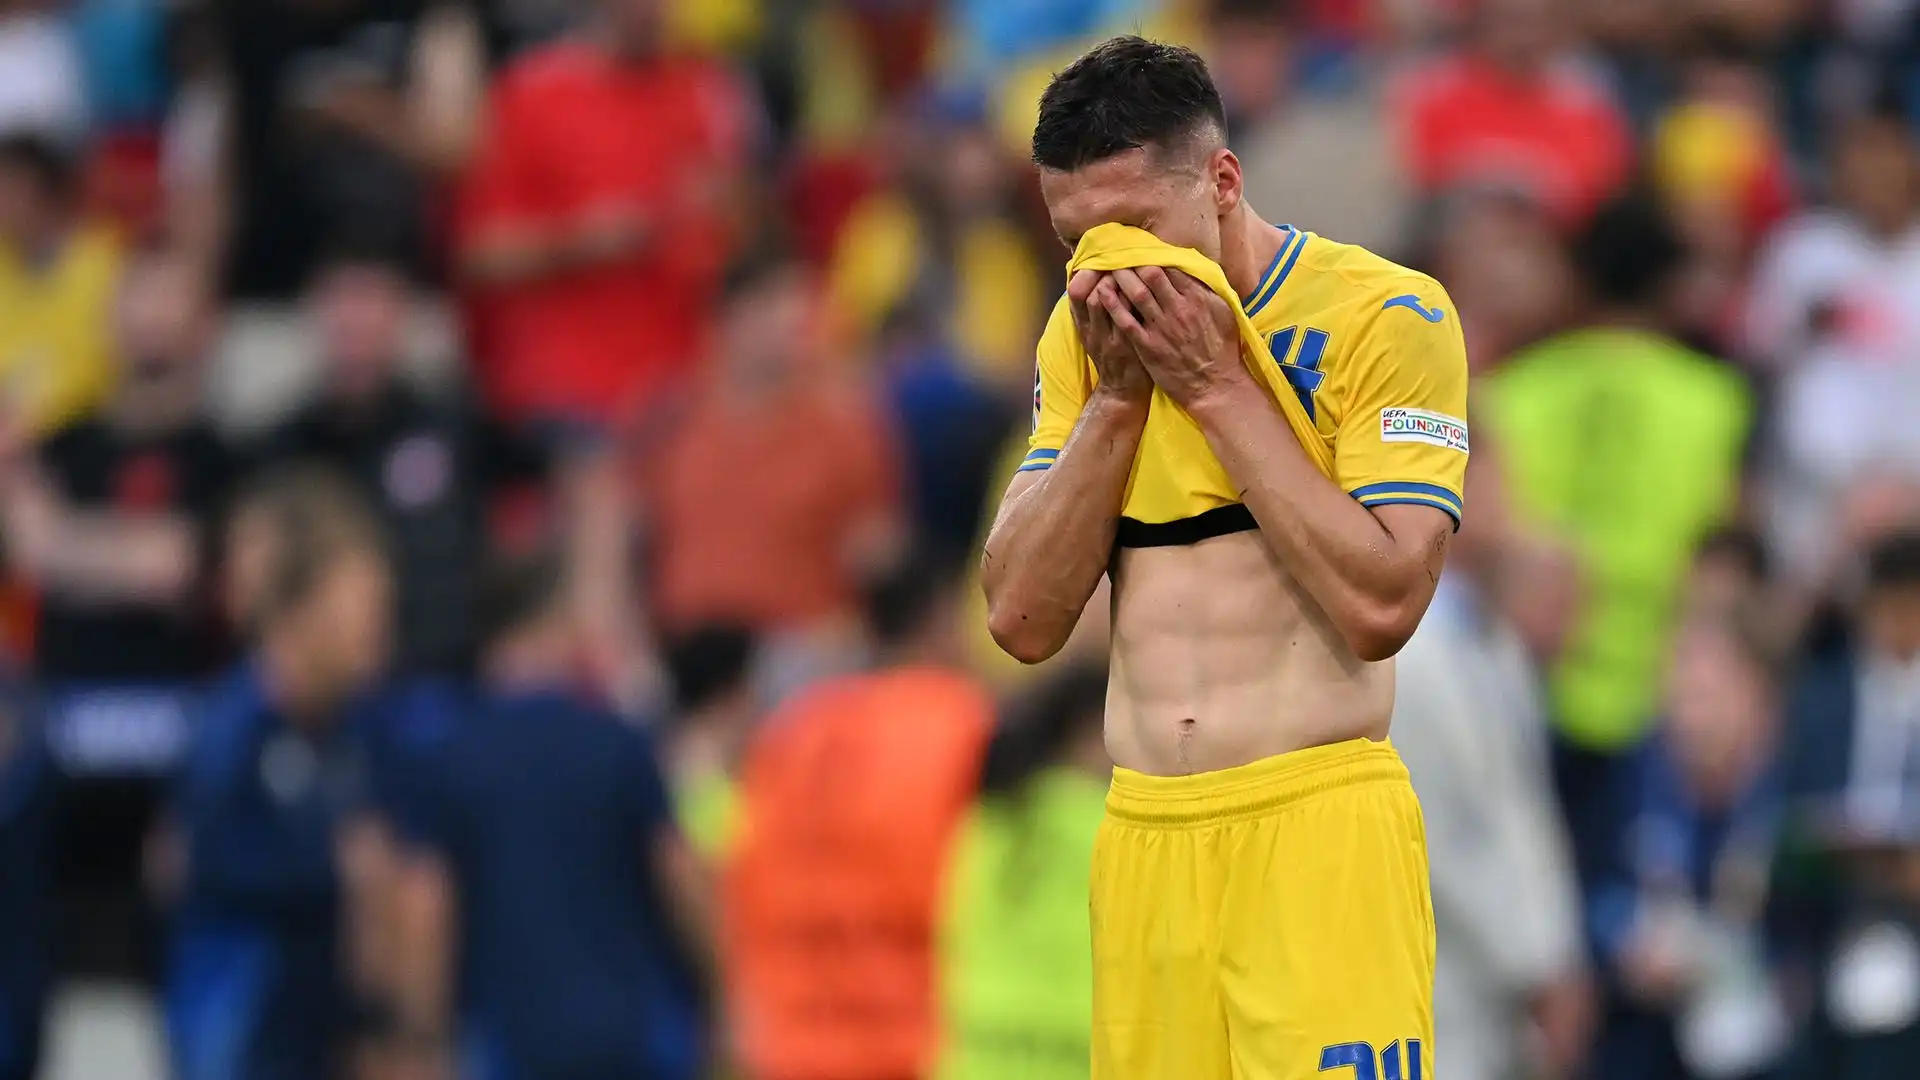 Solo una vittoria poteva salvare l'Ucraina, condannata anche dal pareggio tra Romania e Slovacchia nell'altra partita